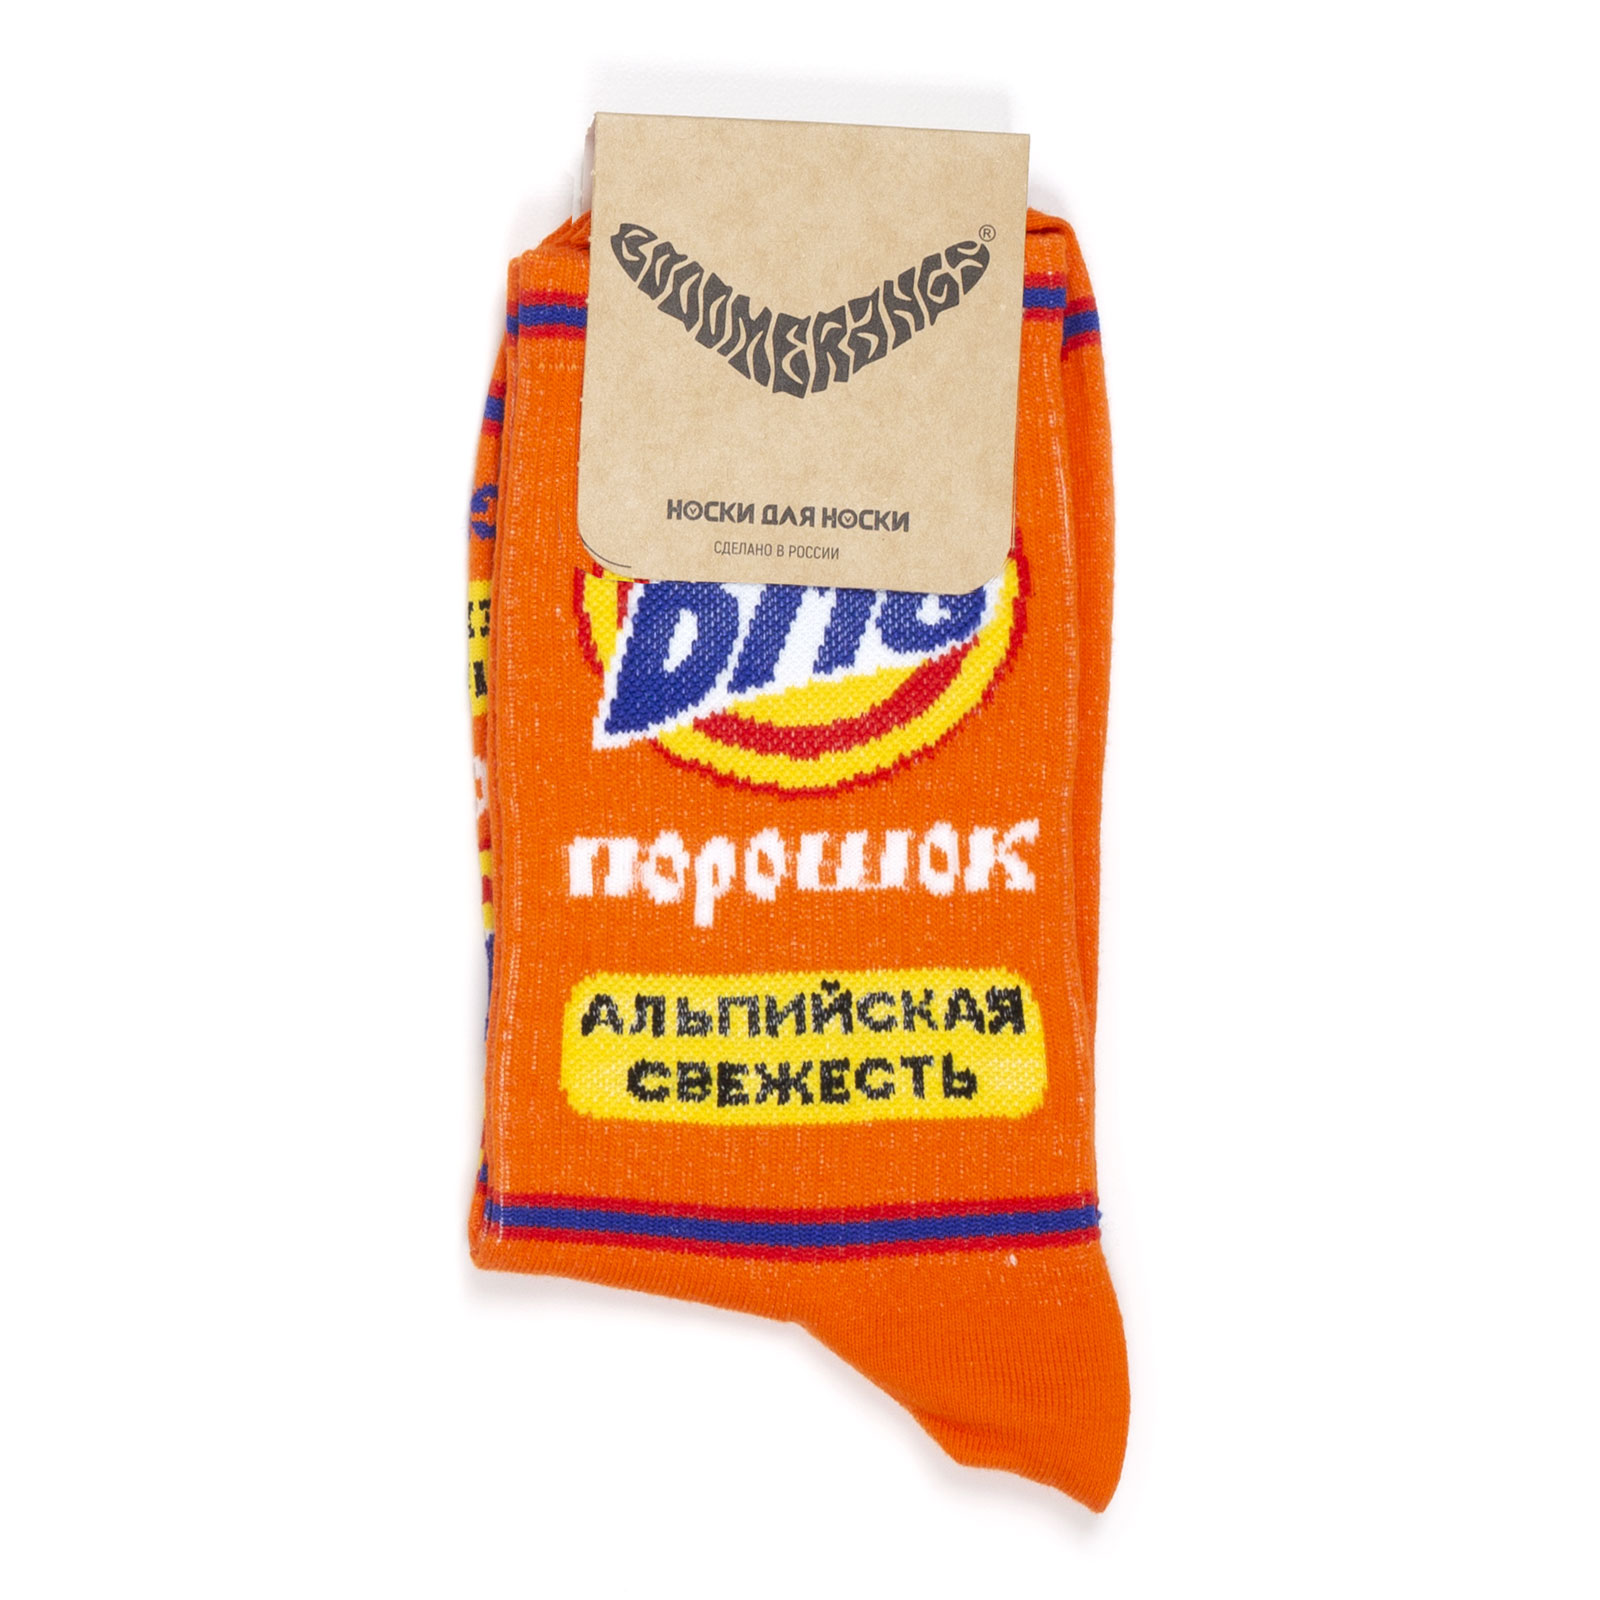 Носки унисекс BOOOMERANGS Дизайн упаковки оранжевые 40-45